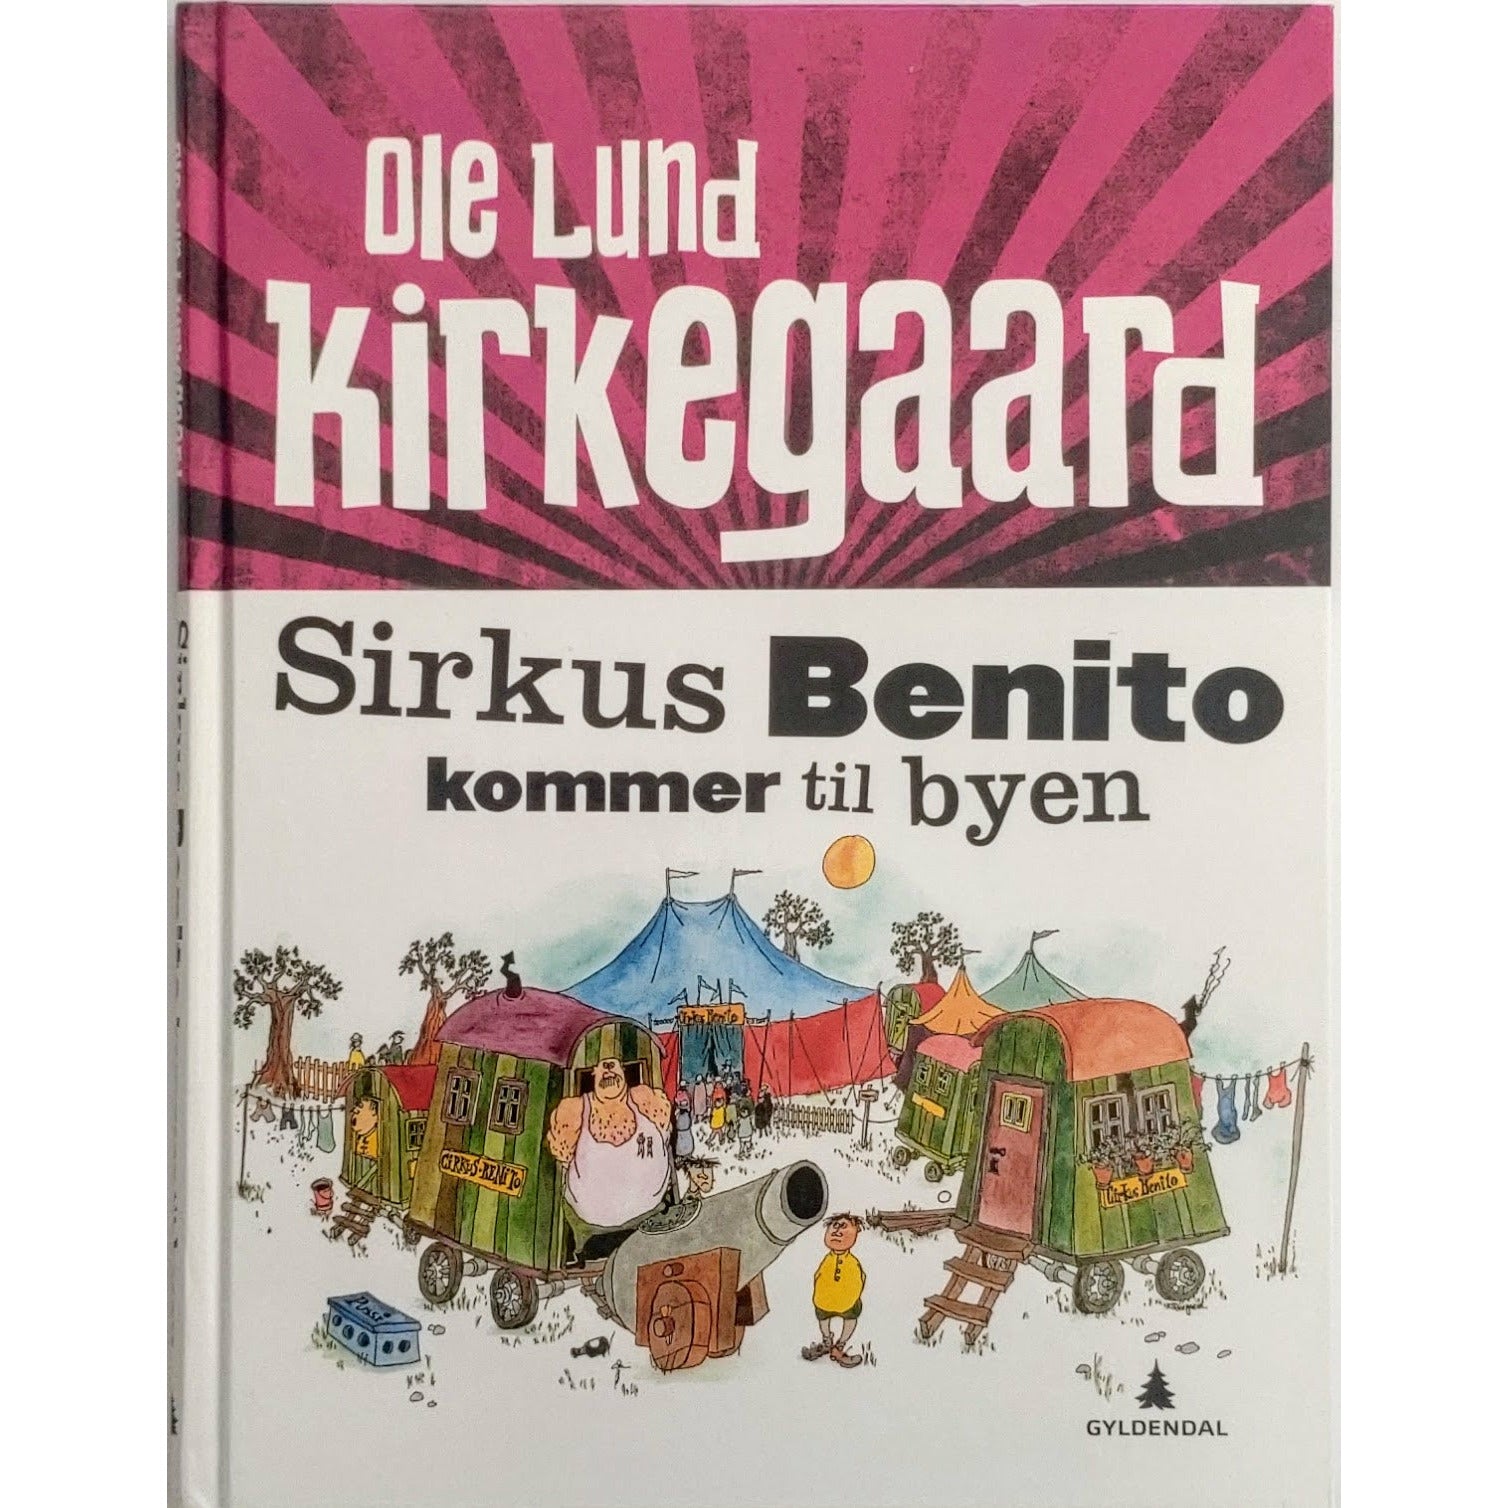 Sirkus Benito kommer til byen, brukte bøker av Ole Lund Kirkegaard